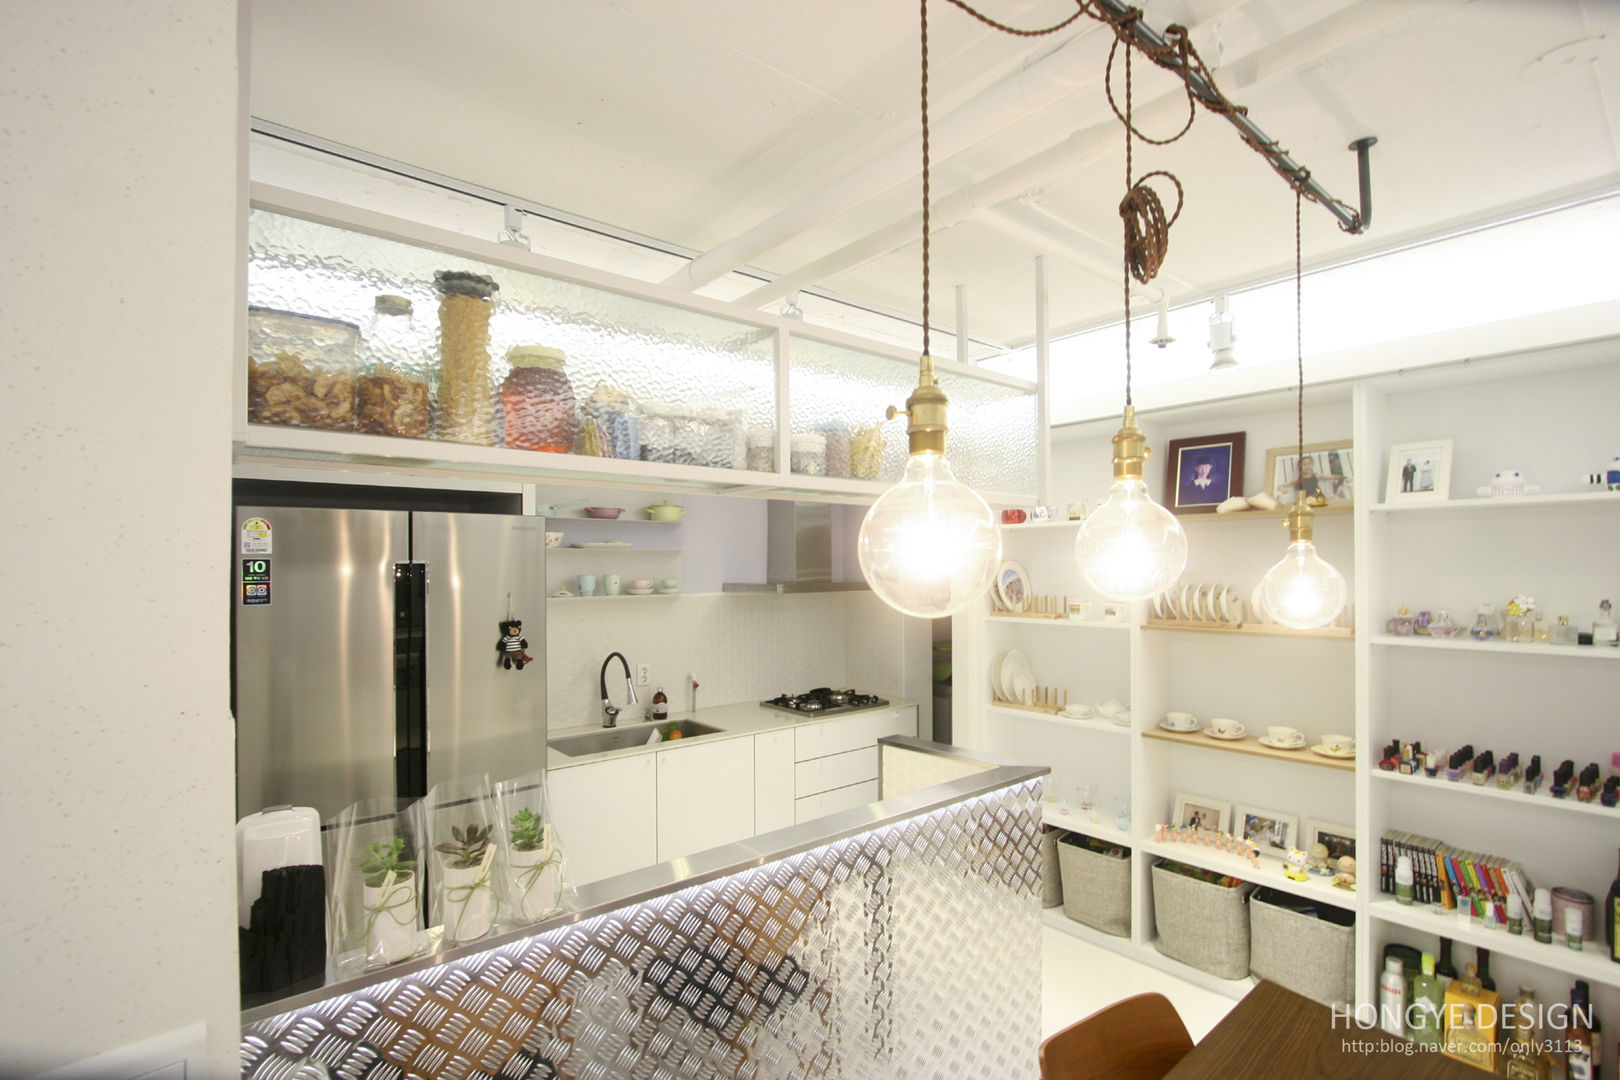 반짝이는 드레스룸과 대면형 주방인테리어_30py, 홍예디자인 홍예디자인 ห้องครัว